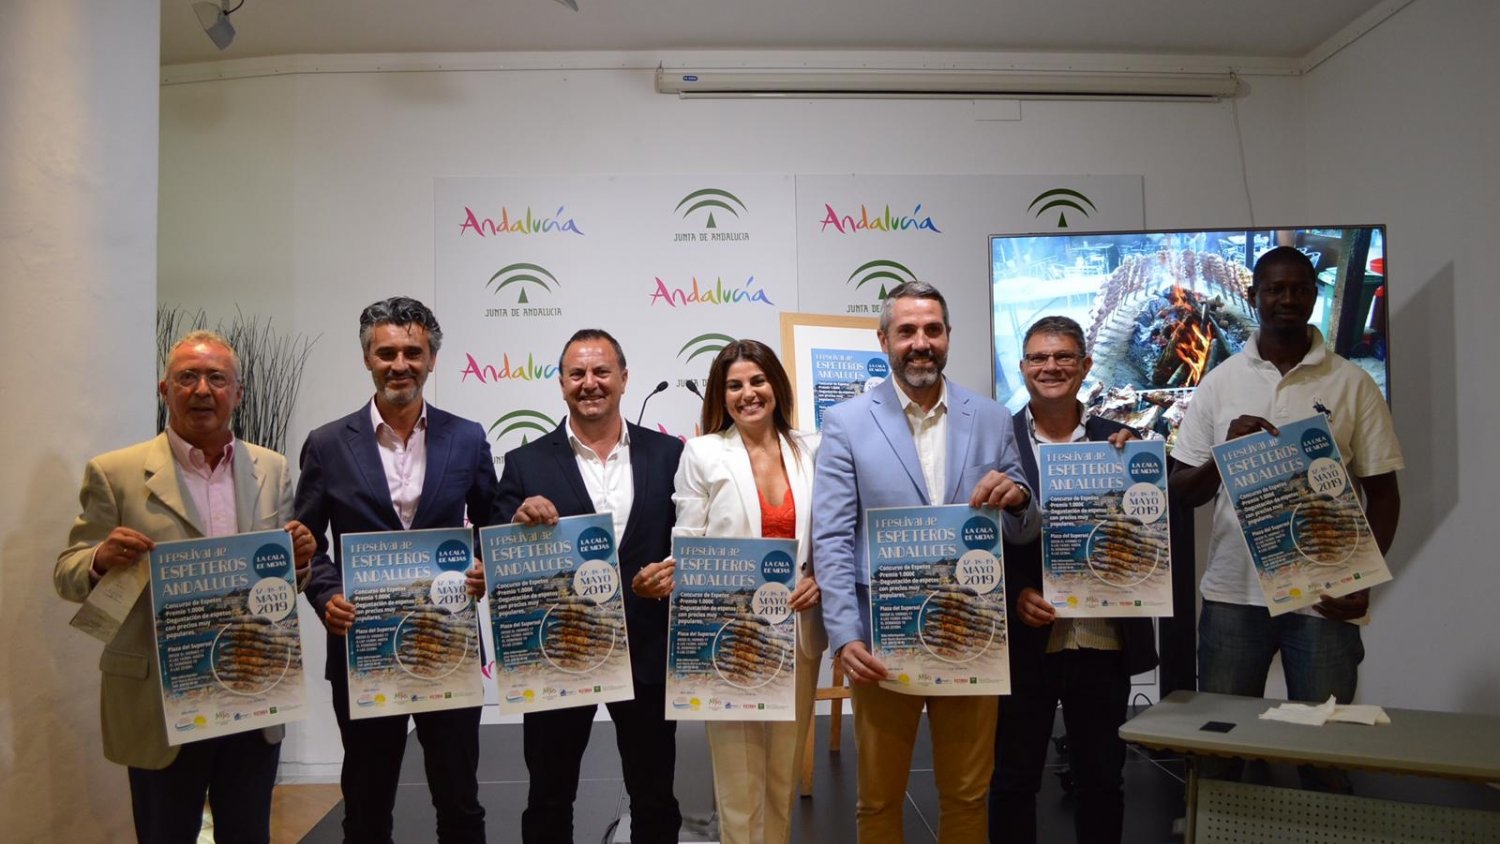 El municipio de Mijas acogerá el primer Festival de Espetos de Andalucía los días 17,18 y 19 de mayo